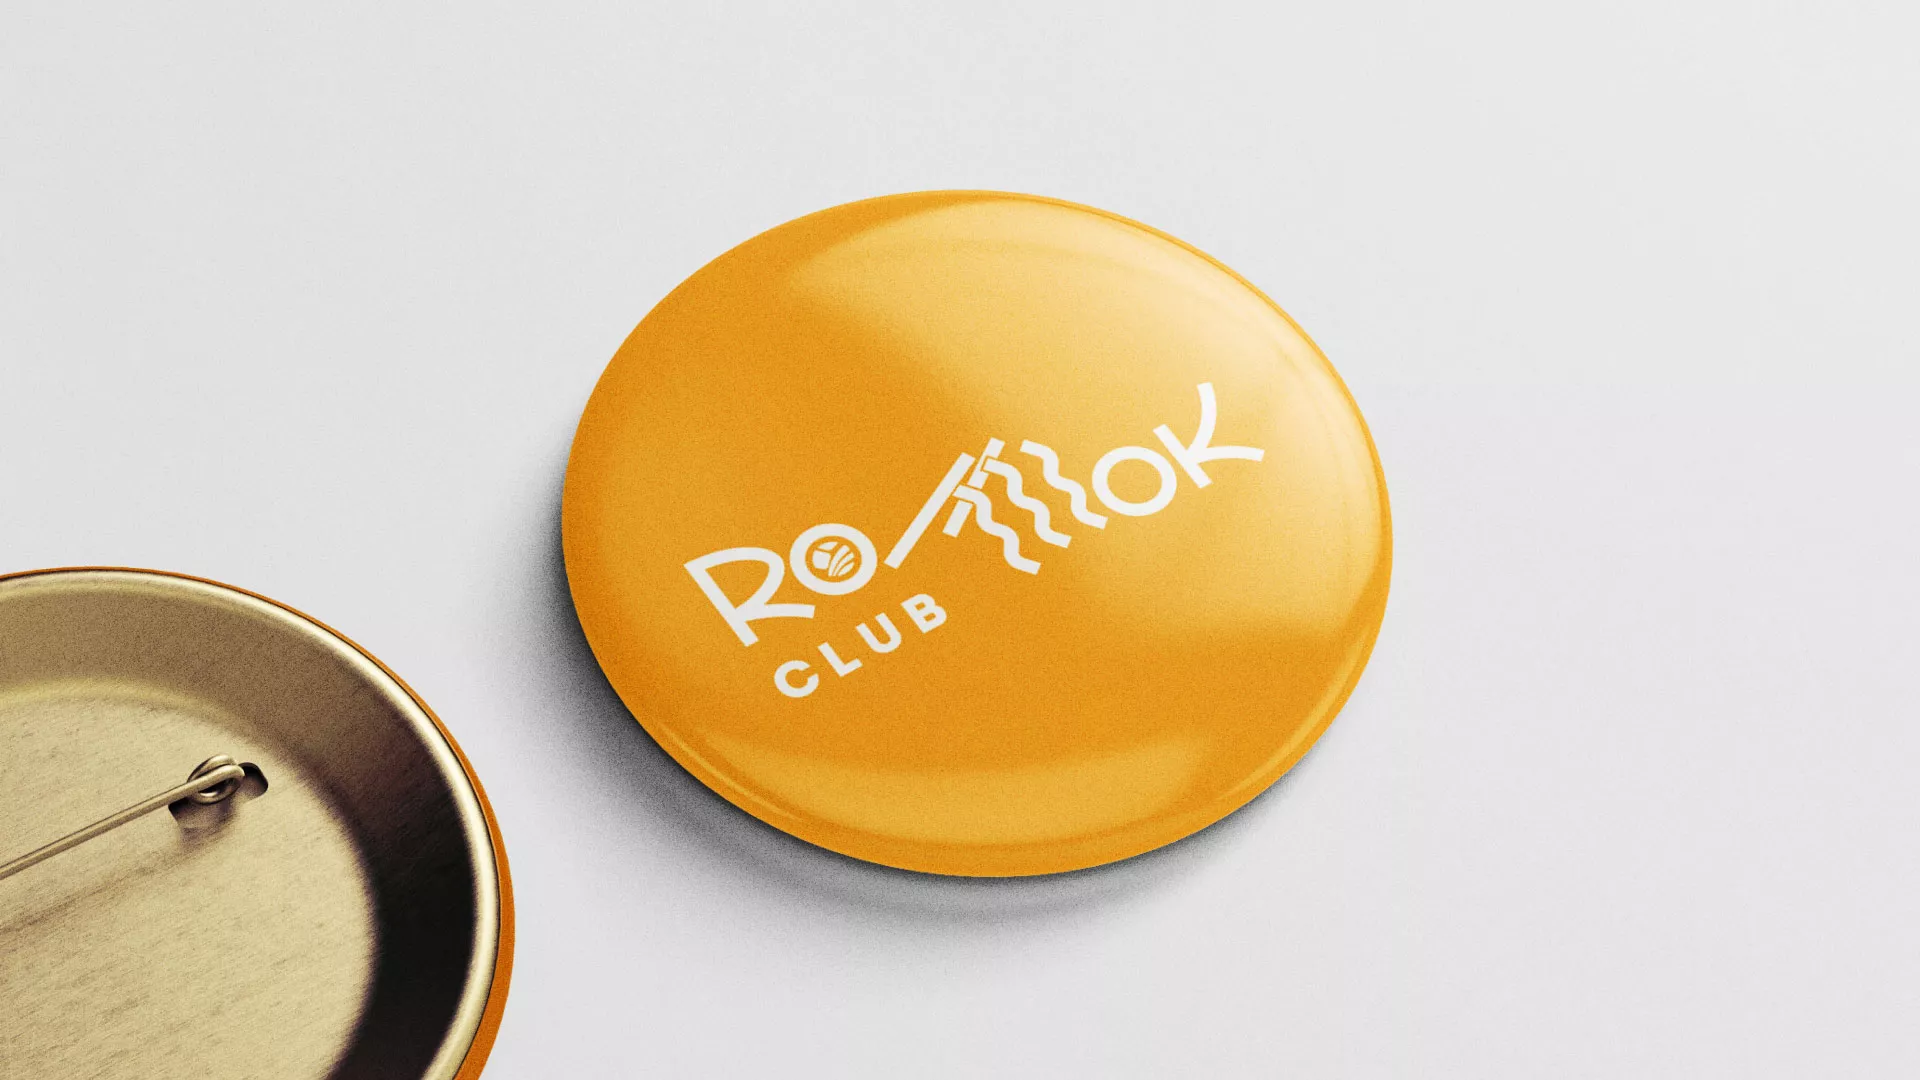 Создание логотипа суши-бара «Roll Wok Club» в Вёшках